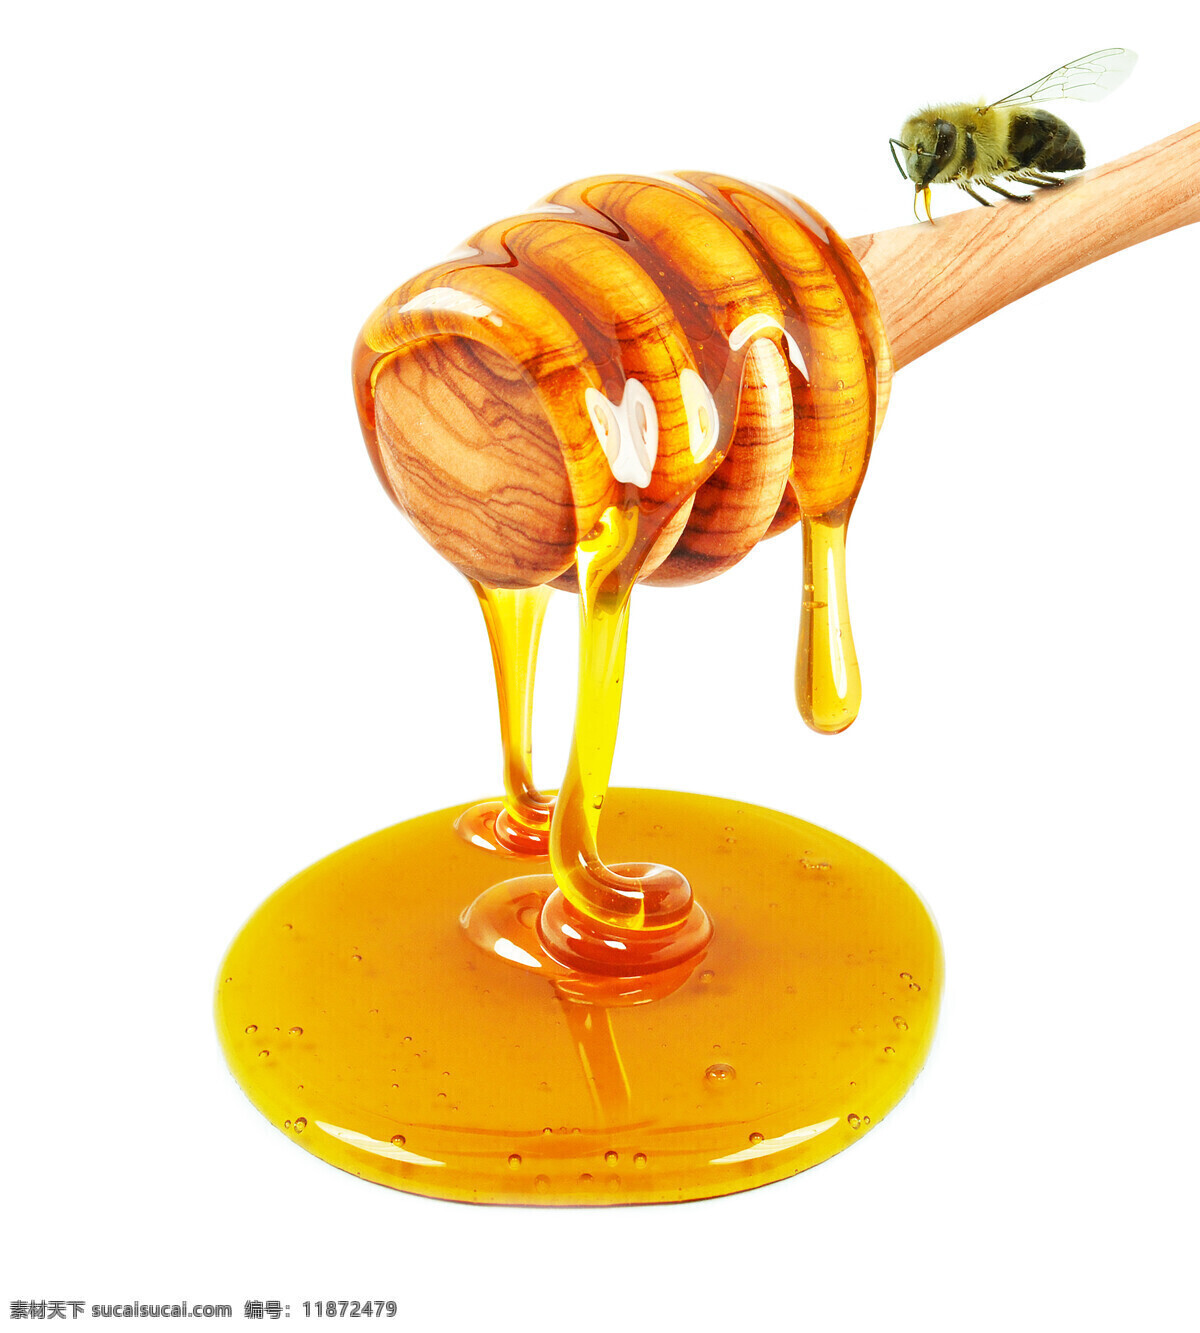 唯美 美味 美食 食物 食品 营养 健康 原料 蜂蜜 原生态蜂蜜 蜜 枣花蜜 营养蜂蜜 餐饮美食 食物原料